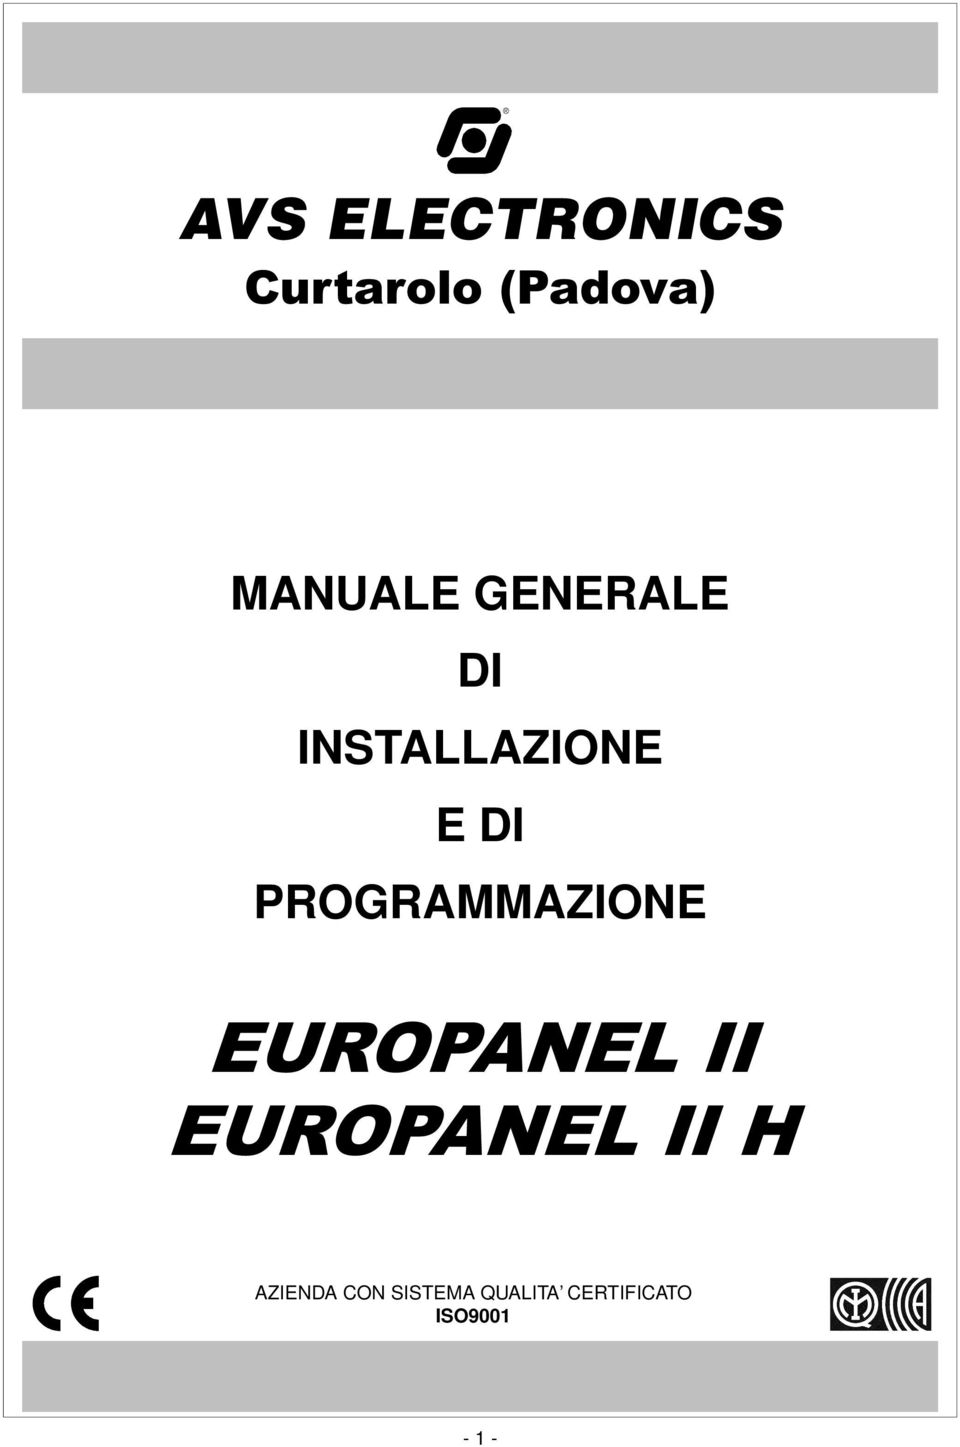 PROGRAMMAZIONE EUROPANEL II EUROPANEL II